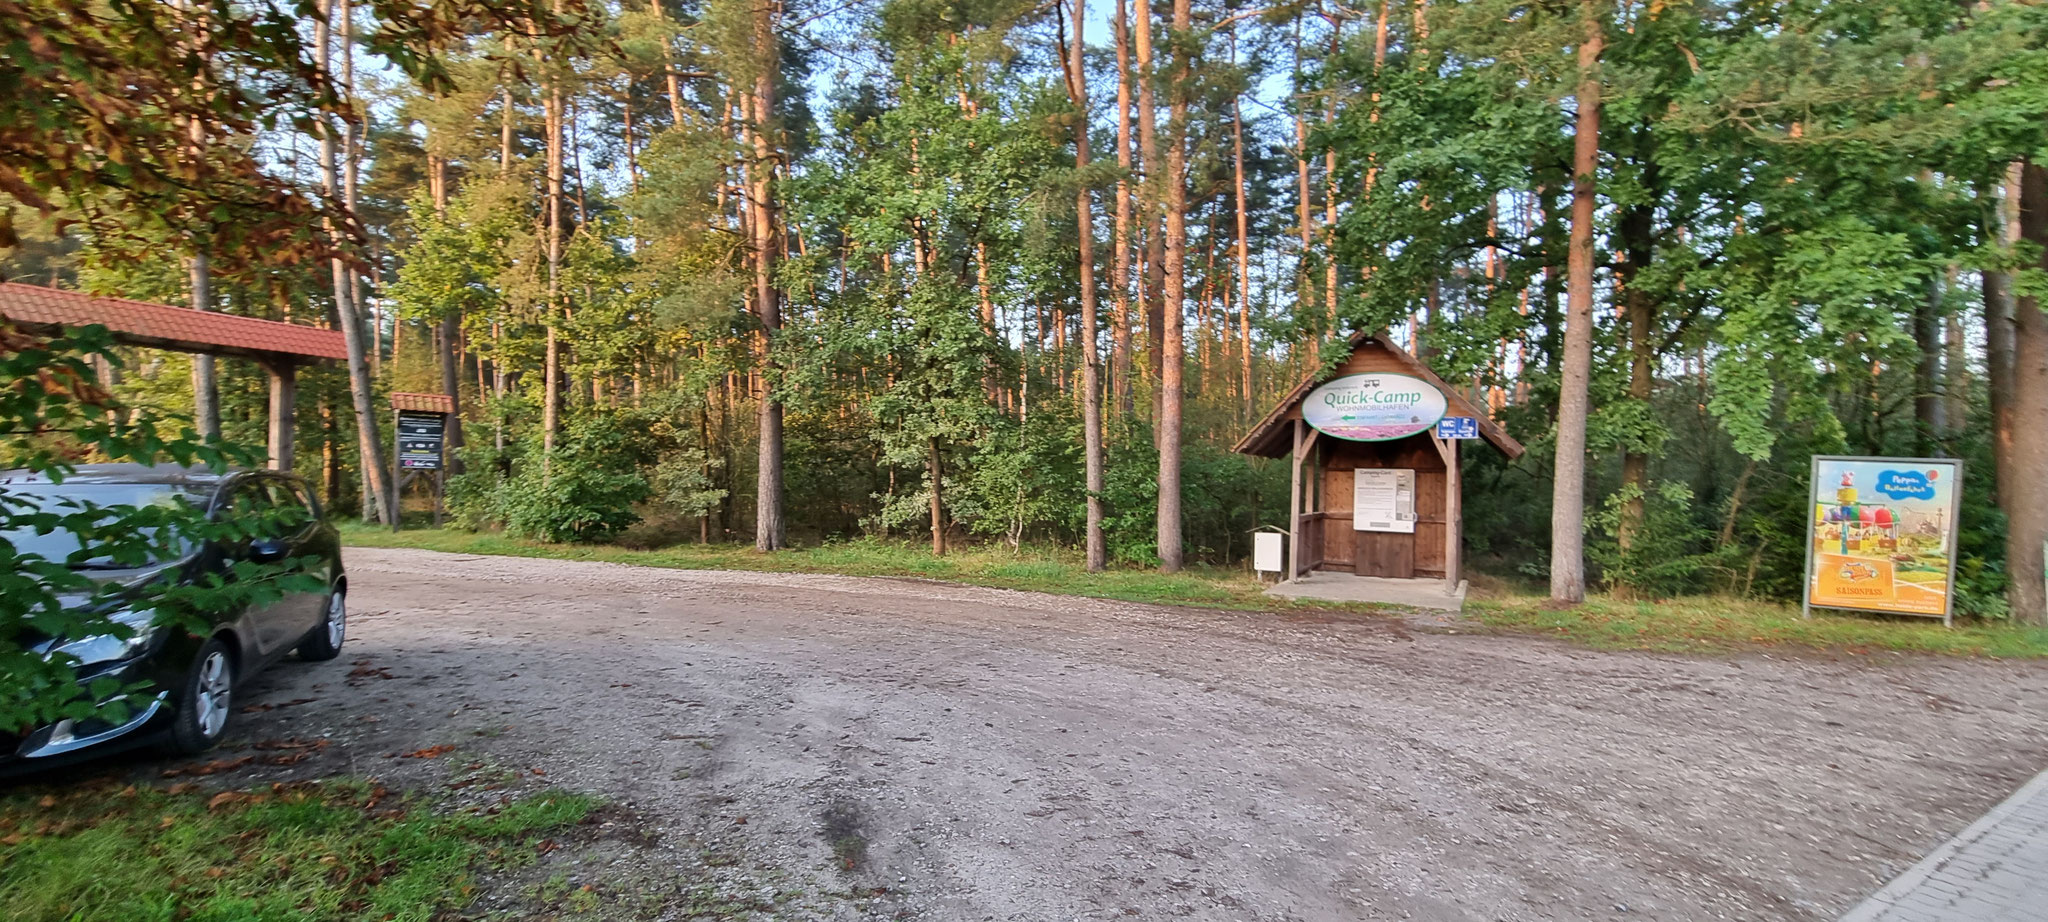 Der Eingang zum Quick-Camp